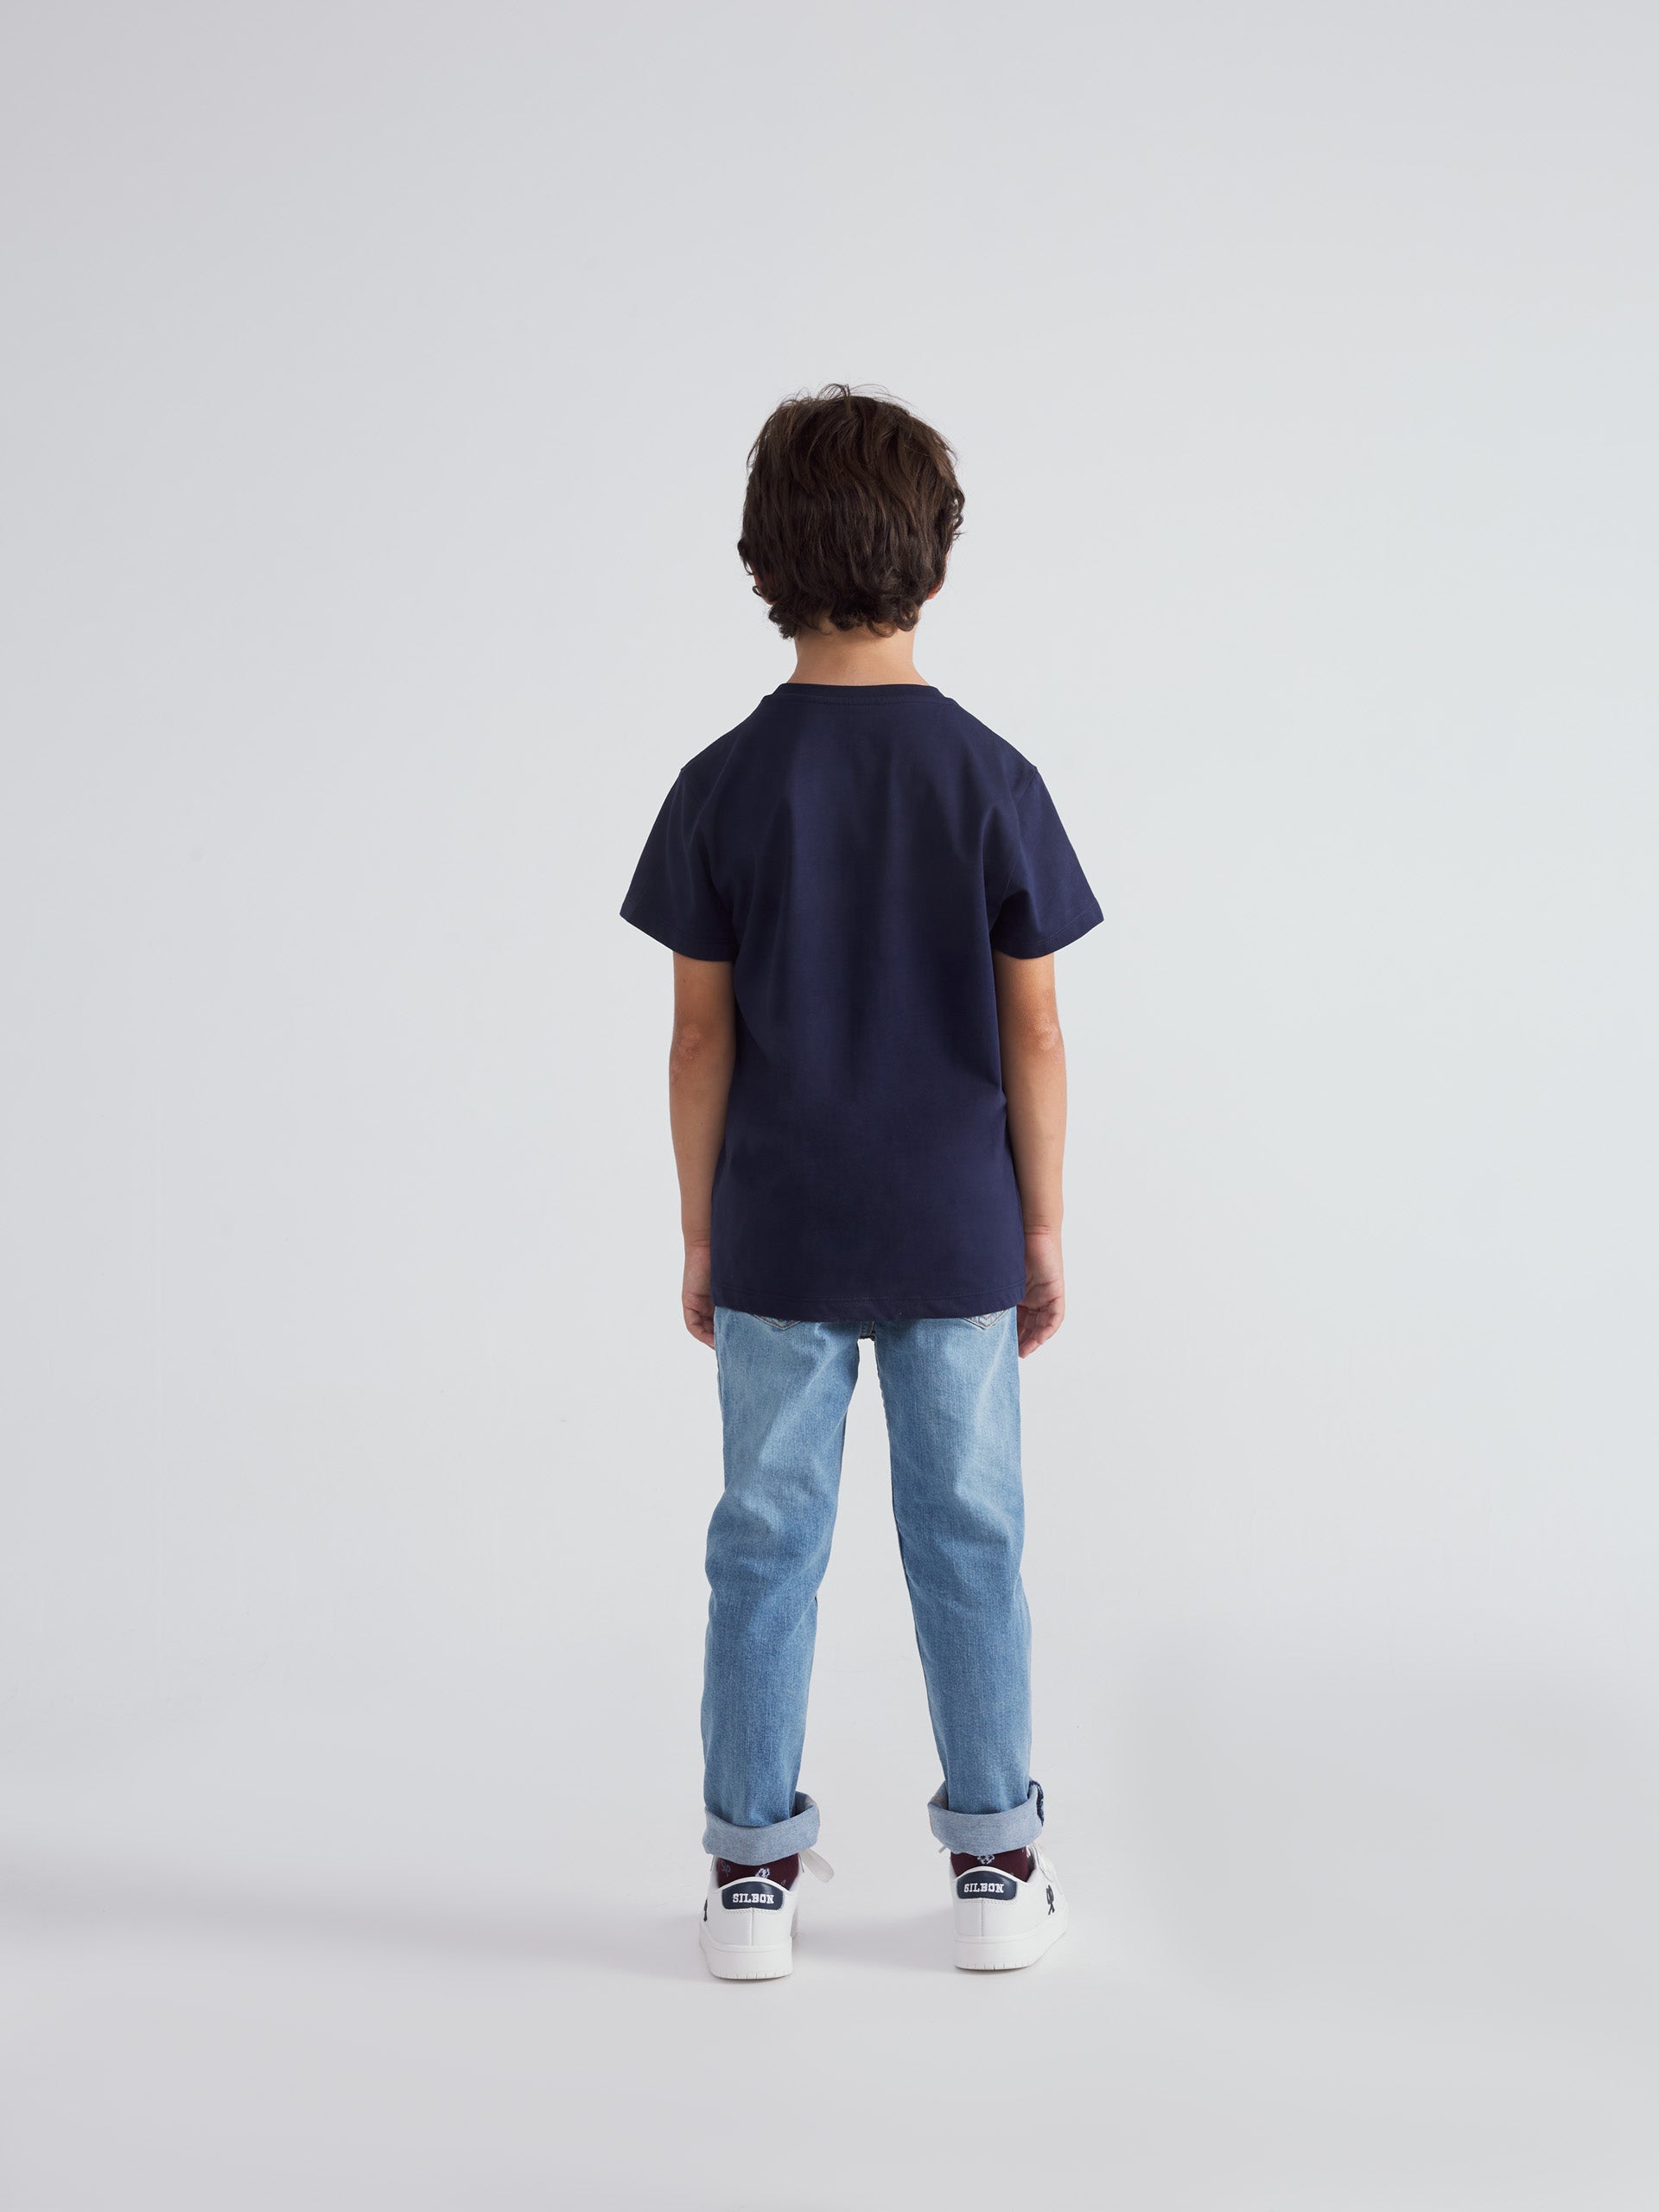 Camiseta kids classic logo azul marino